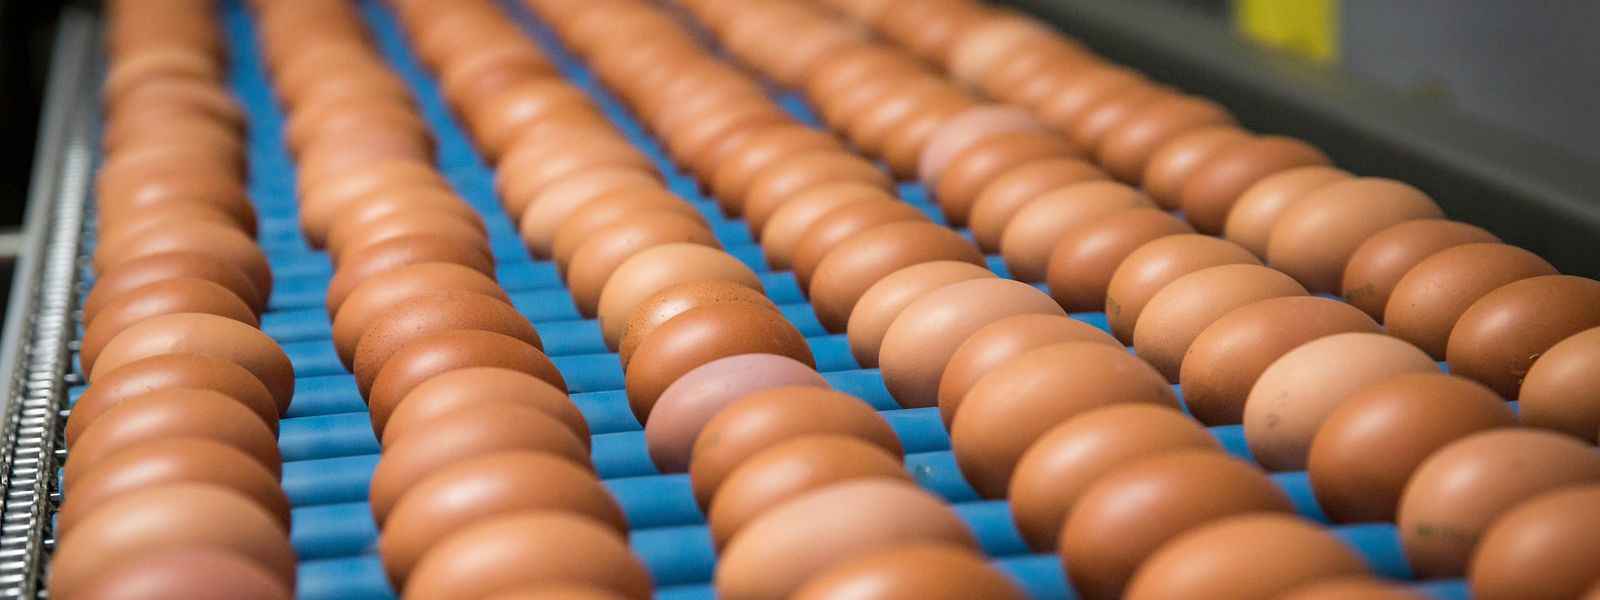 Künftig sollen sowohl neue Bioprodukte produziert und bereits existente, wie Eier, weiter gefördert werden.